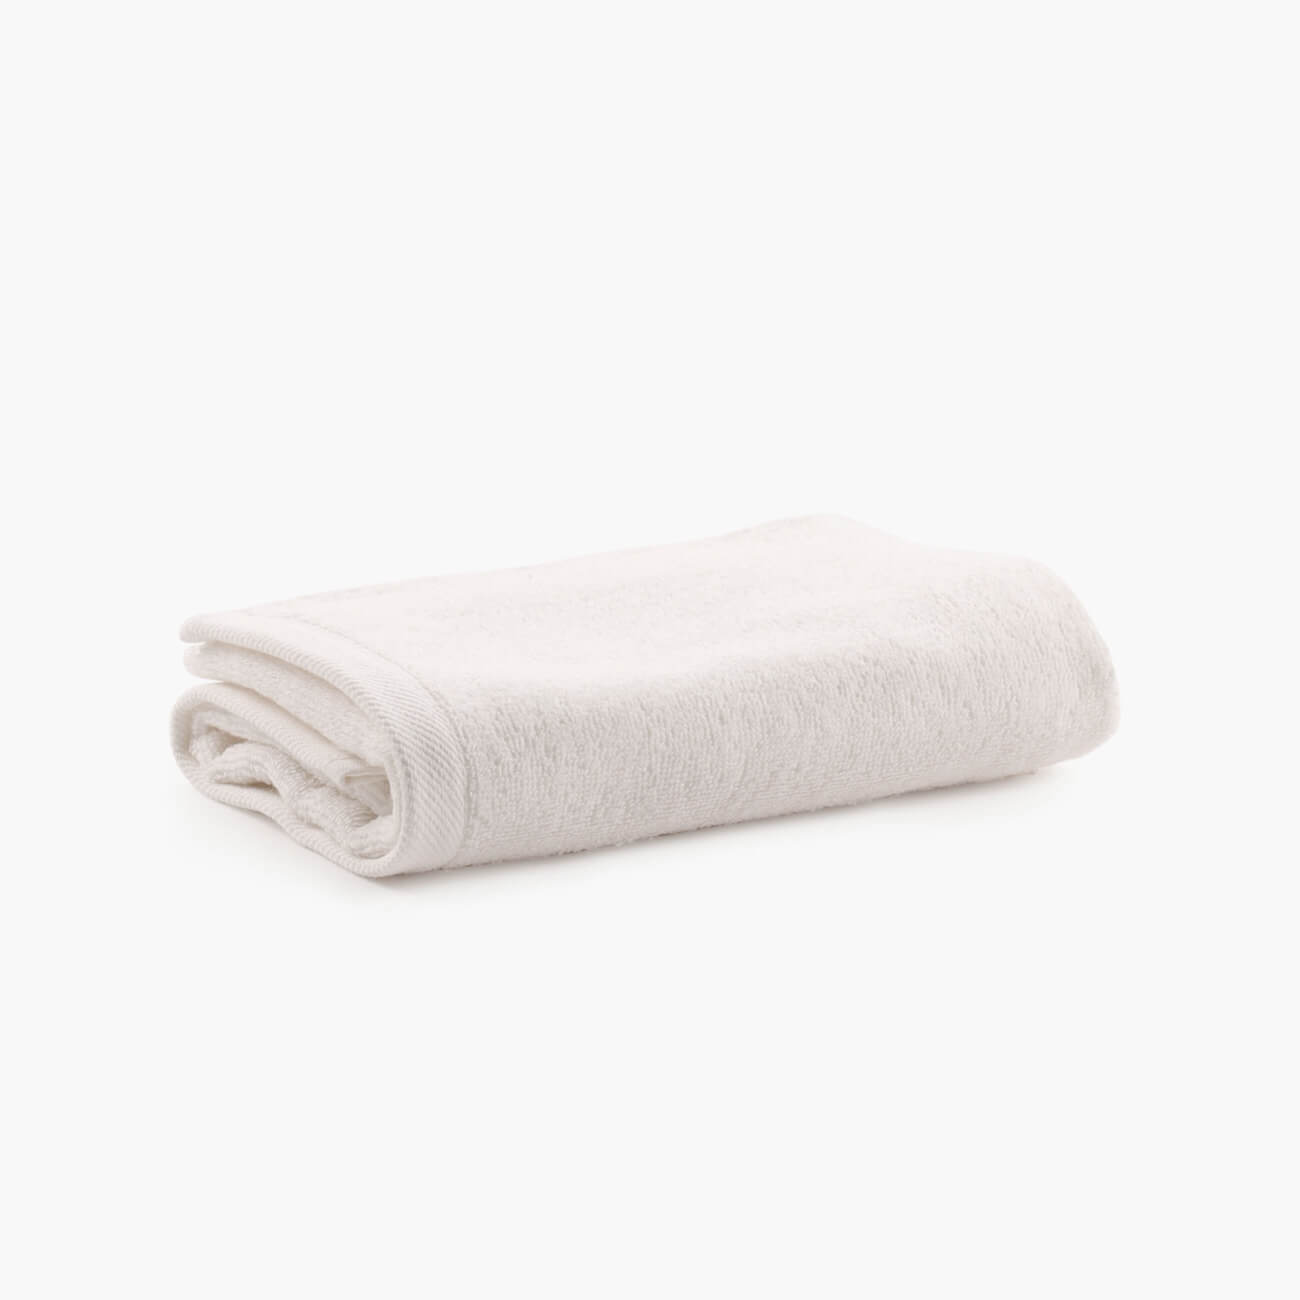 Полотенце, 40х60 см, хлопок, молочное, Wellness полотенце для рук 71х46 см kassatex lisboa rosewater lsb 110 rsw